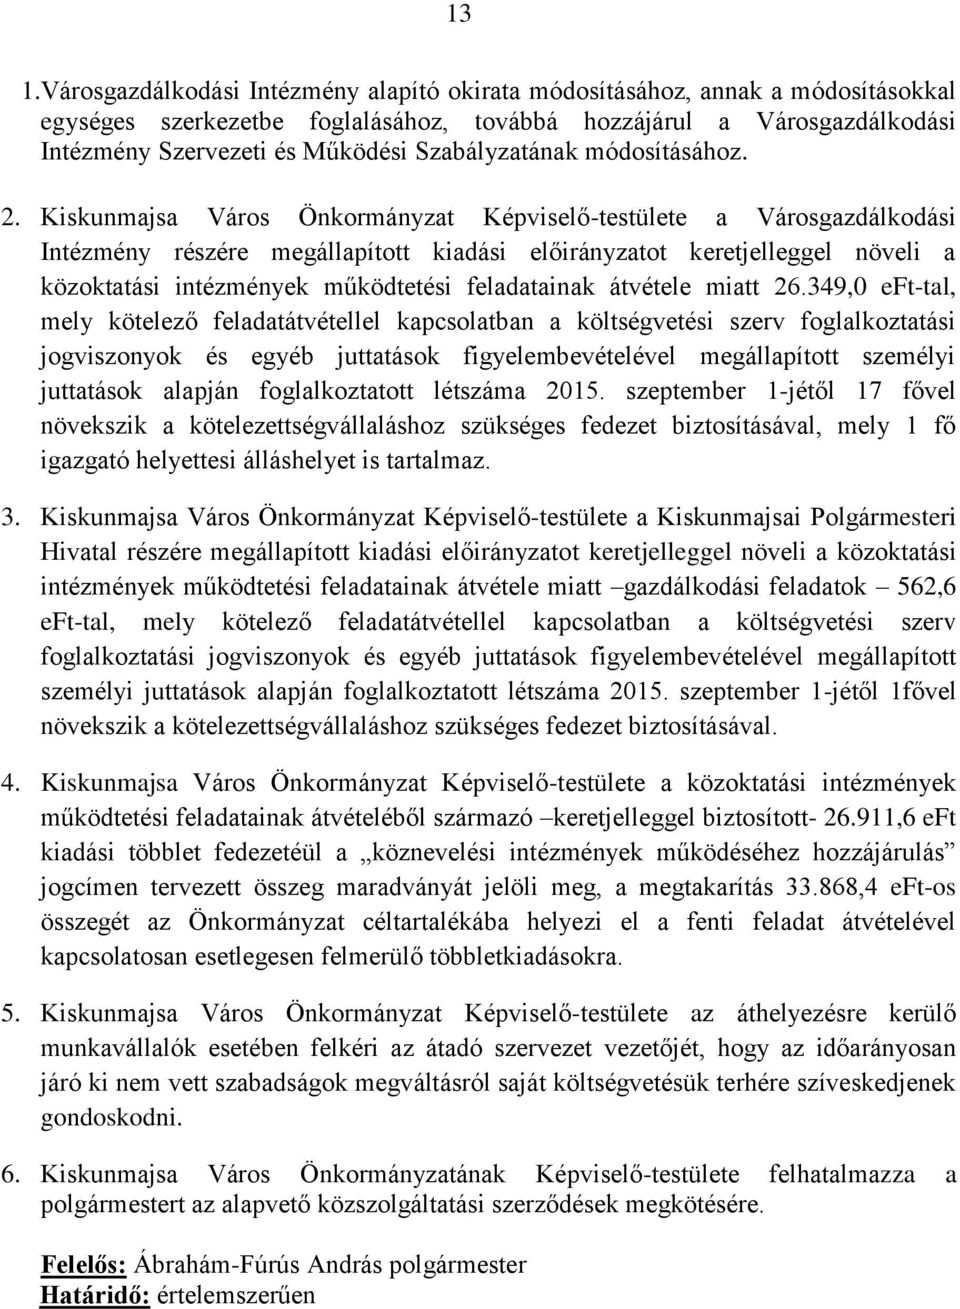 Kiskunmajsa Város Önkormányzat Képviselő-testülete a Városgazdálkodási Intézmény részére megállapított kiadási előirányzatot keretjelleggel növeli a közoktatási intézmények működtetési feladatainak